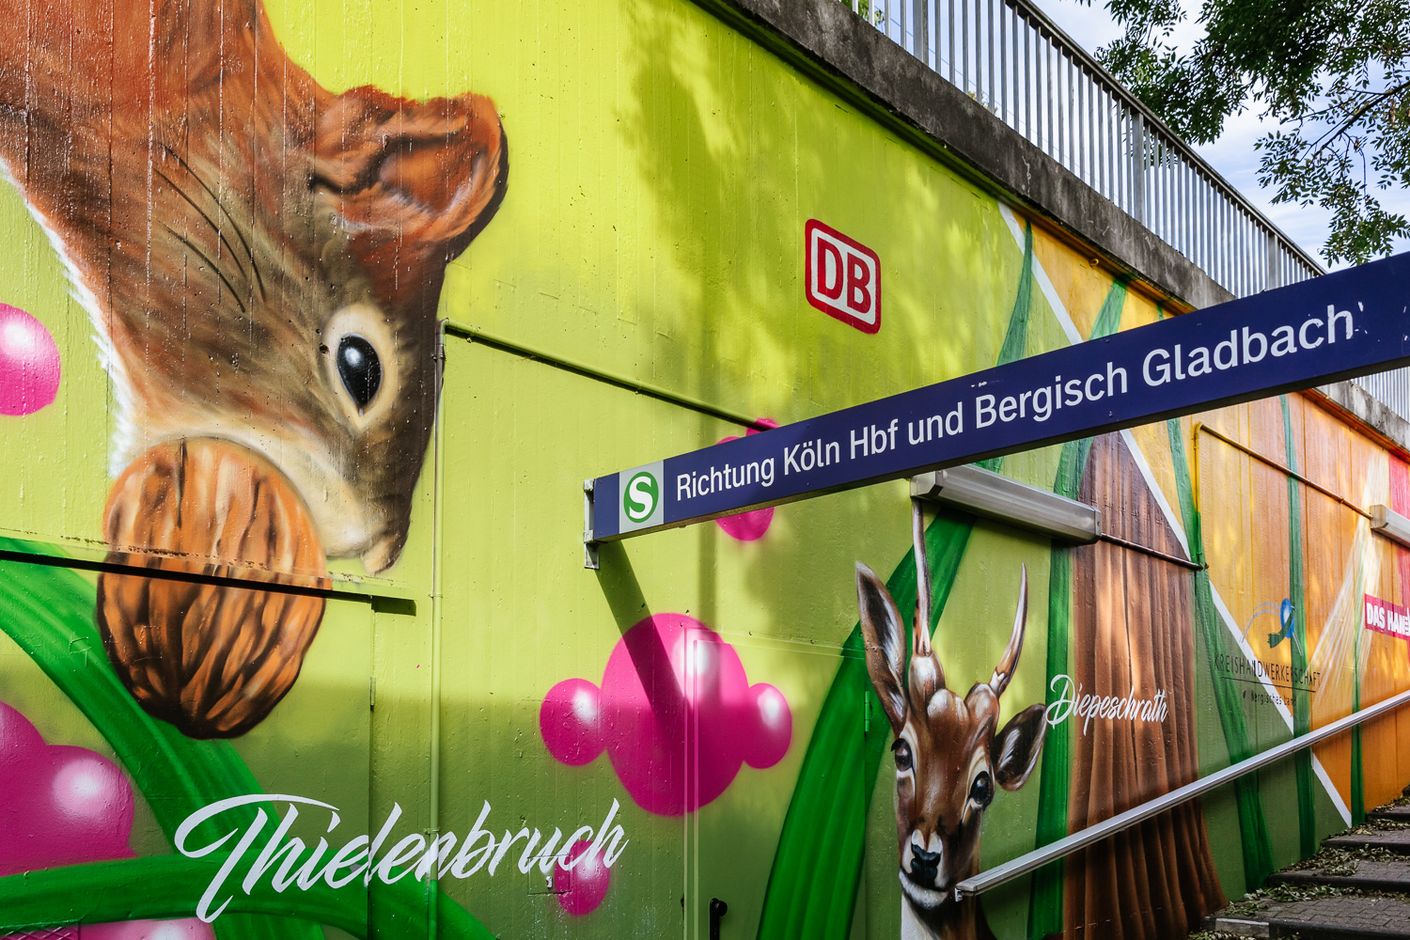 Eine Bildergalerie zeigt Impressionen von der Station Duckterath, deren Kunstgraffitis illegalen Sprayern keinen Anlass geben, selbst Hand anzulegen.